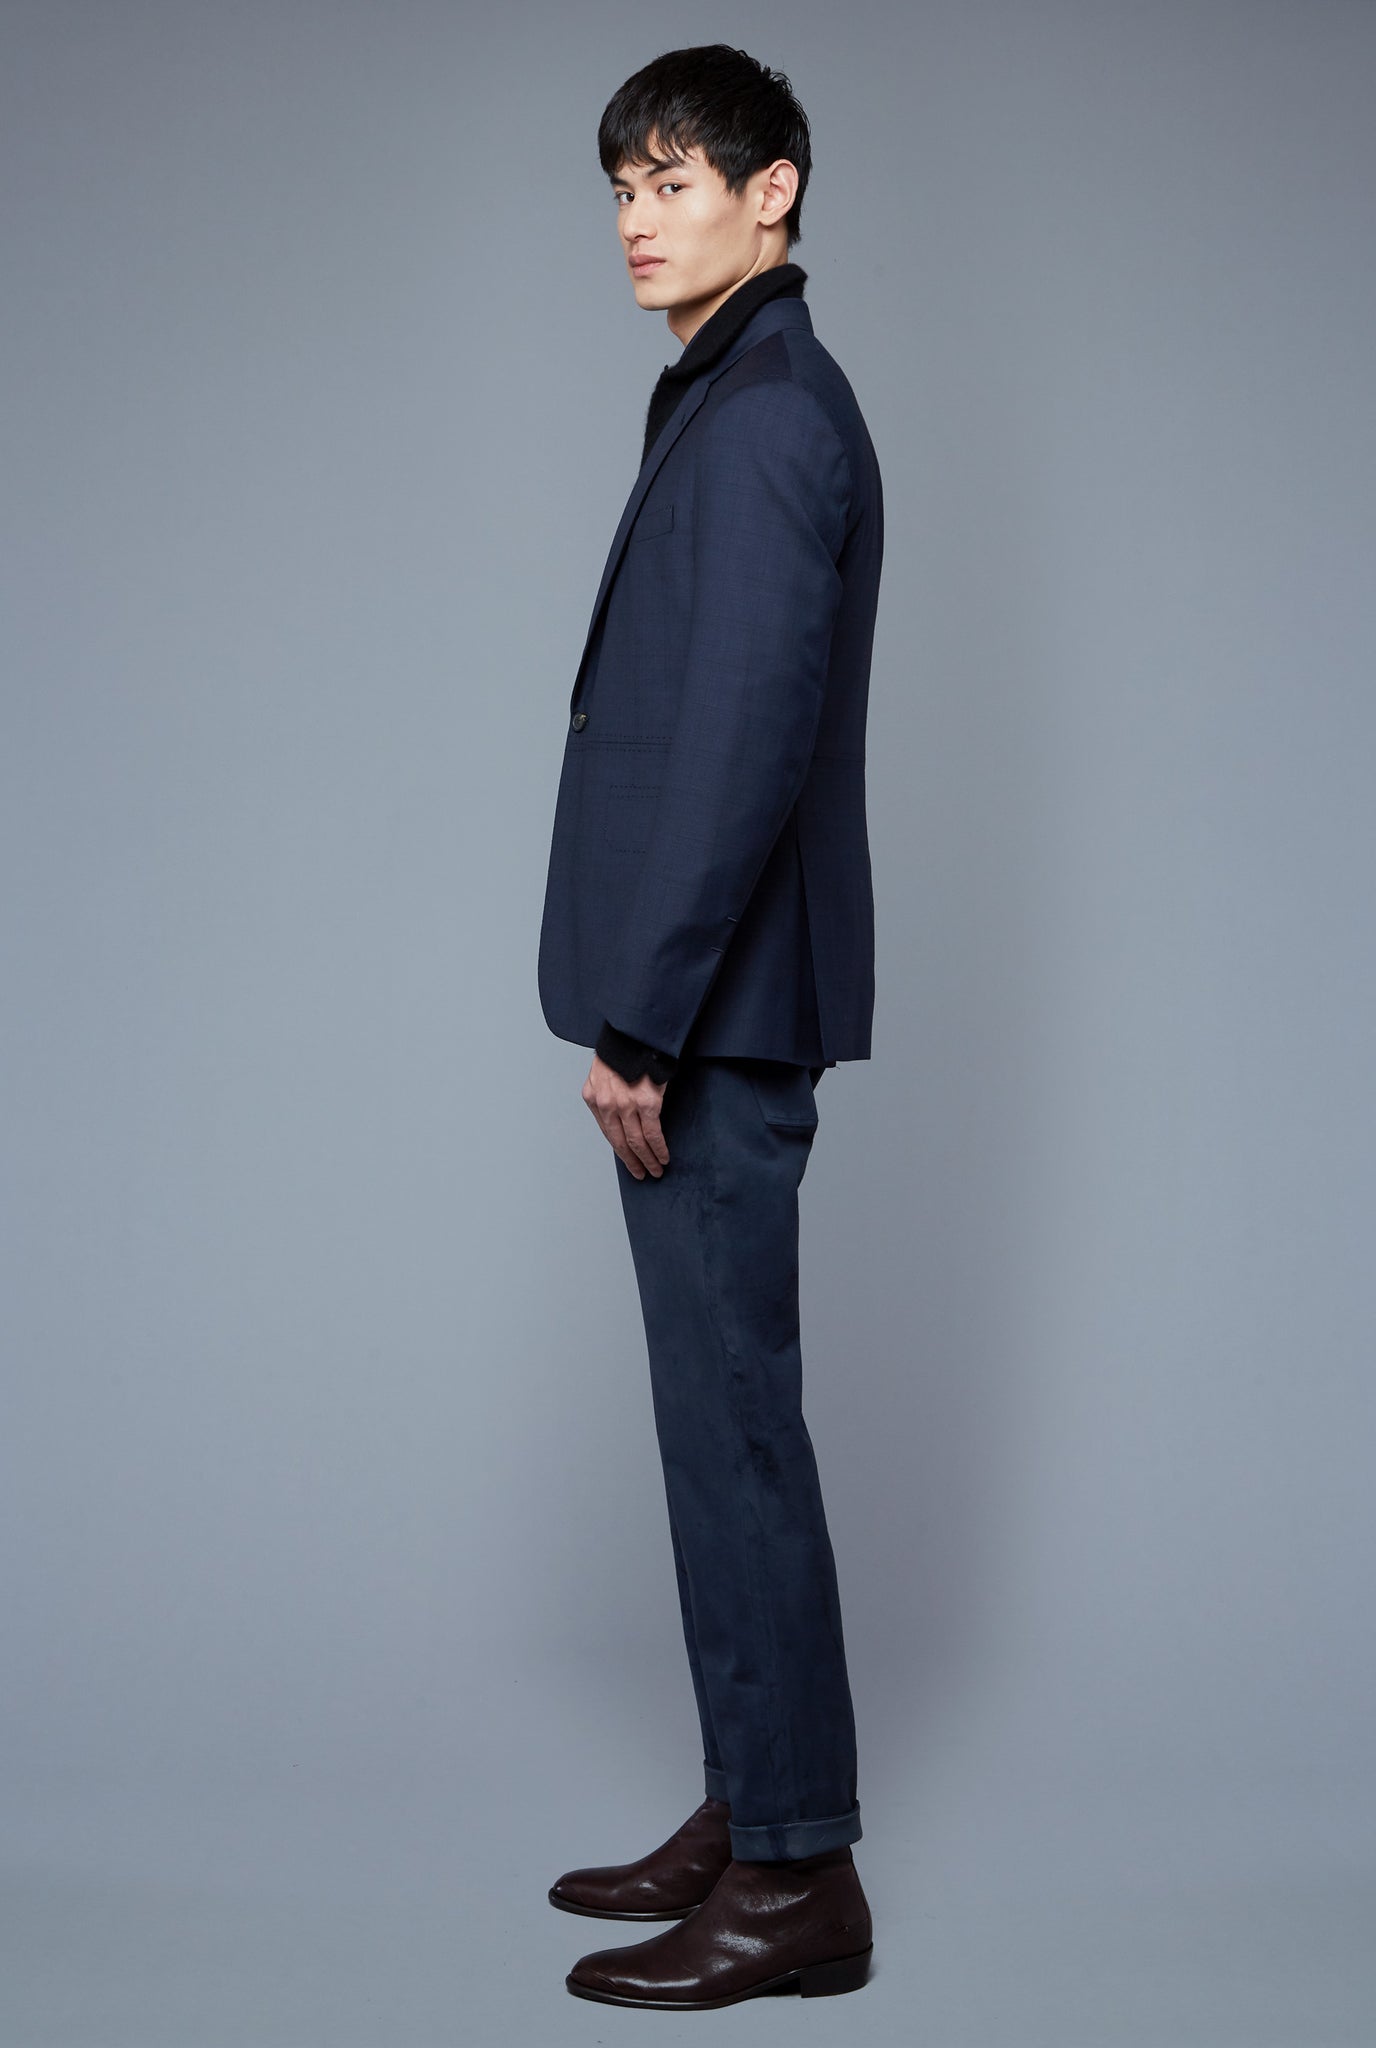 Side View: Model Qiang Li wearing Notch Lapel Jacket